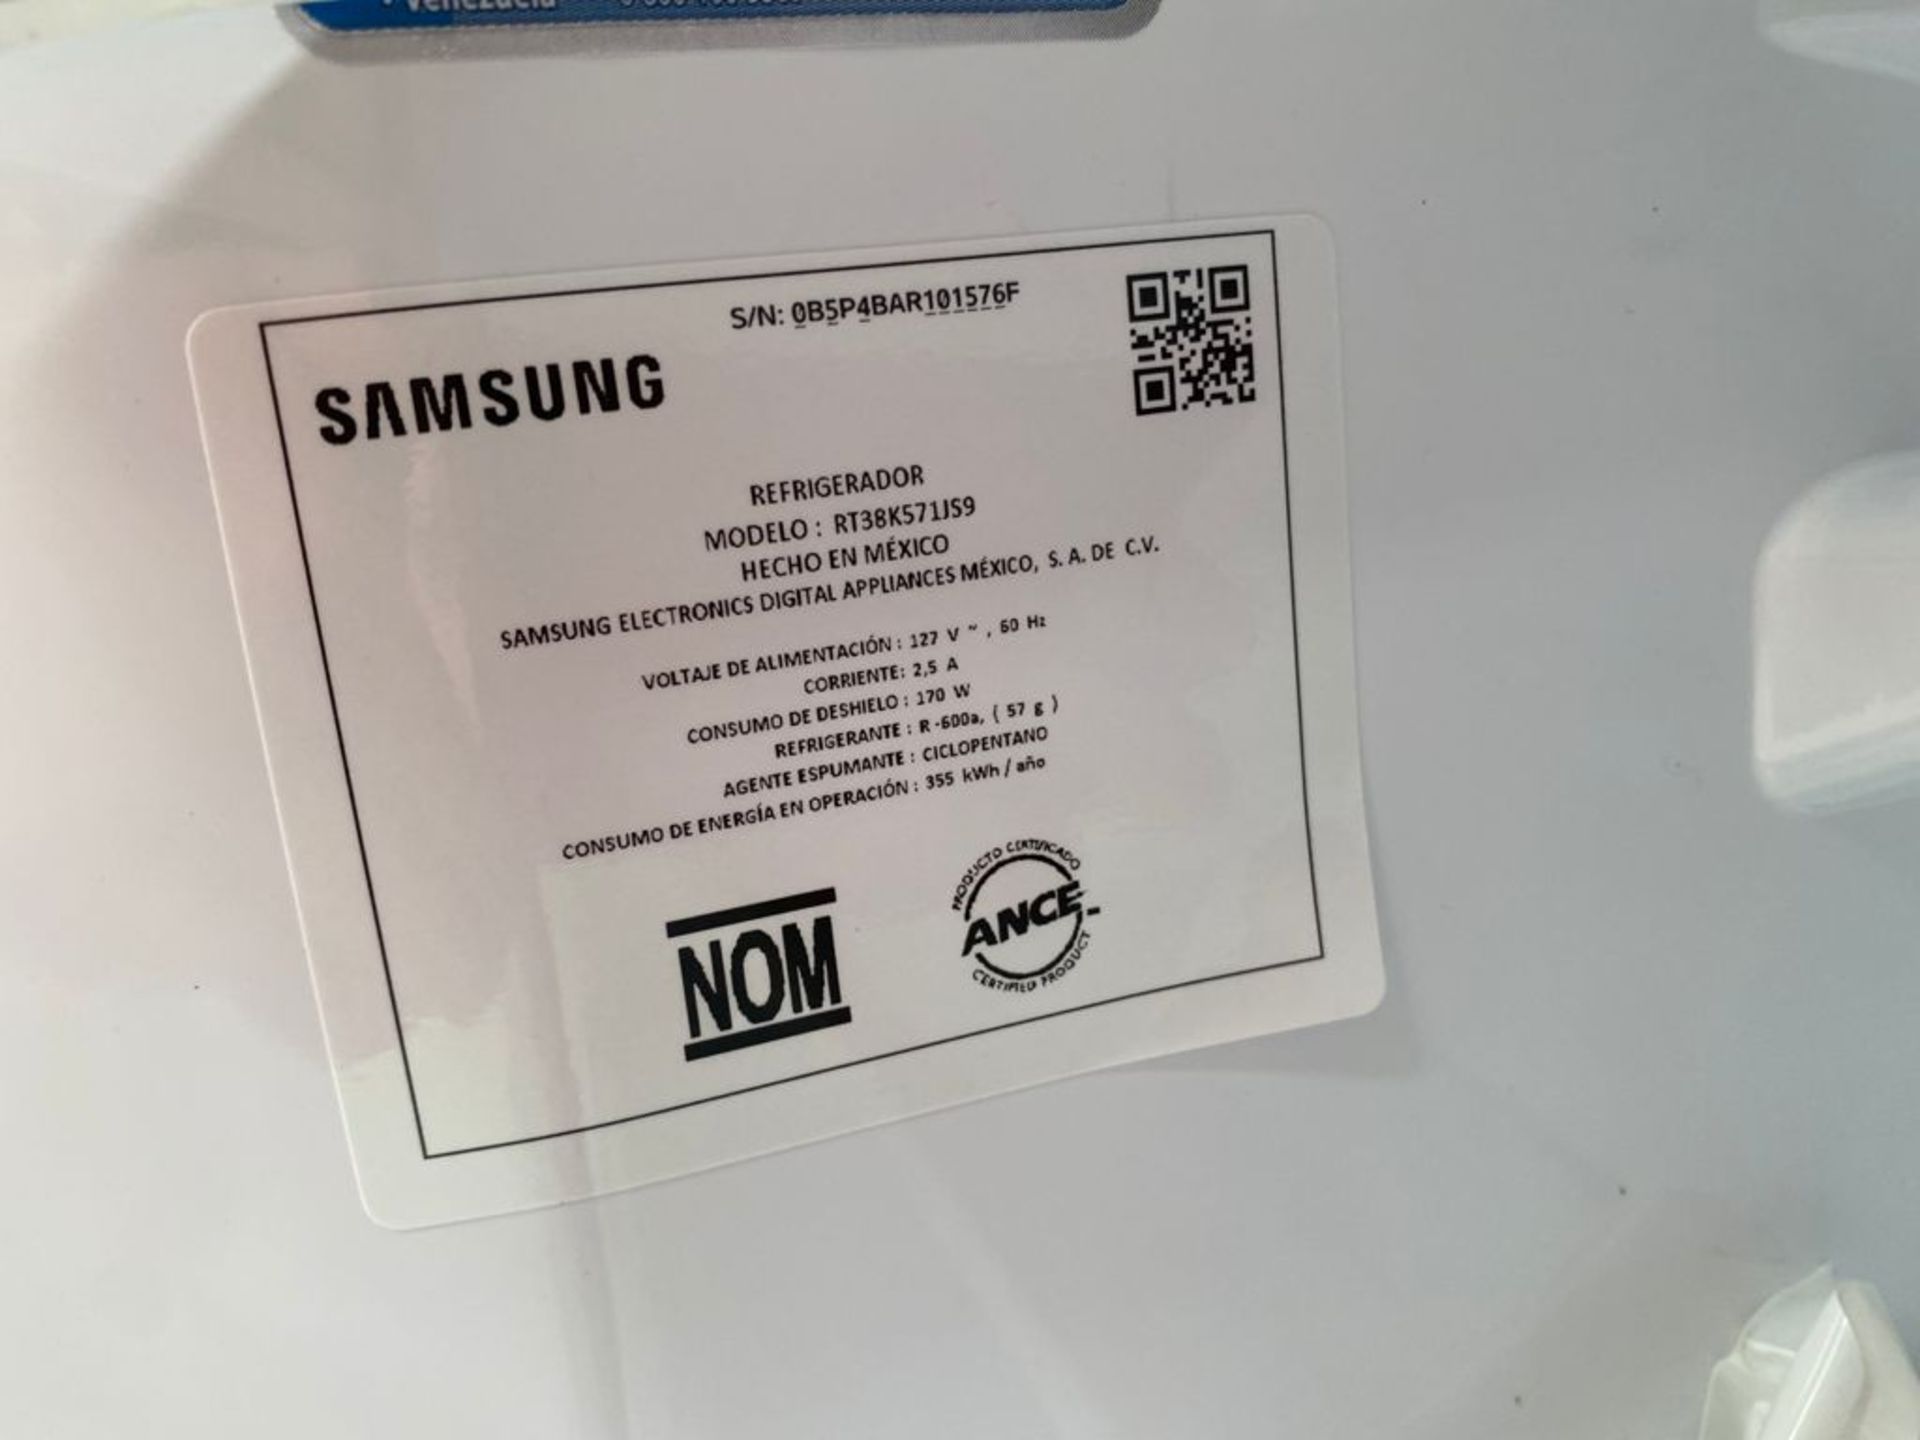 1 Refrigerador marca Samsung color gris con despachador de agua - Image 13 of 14